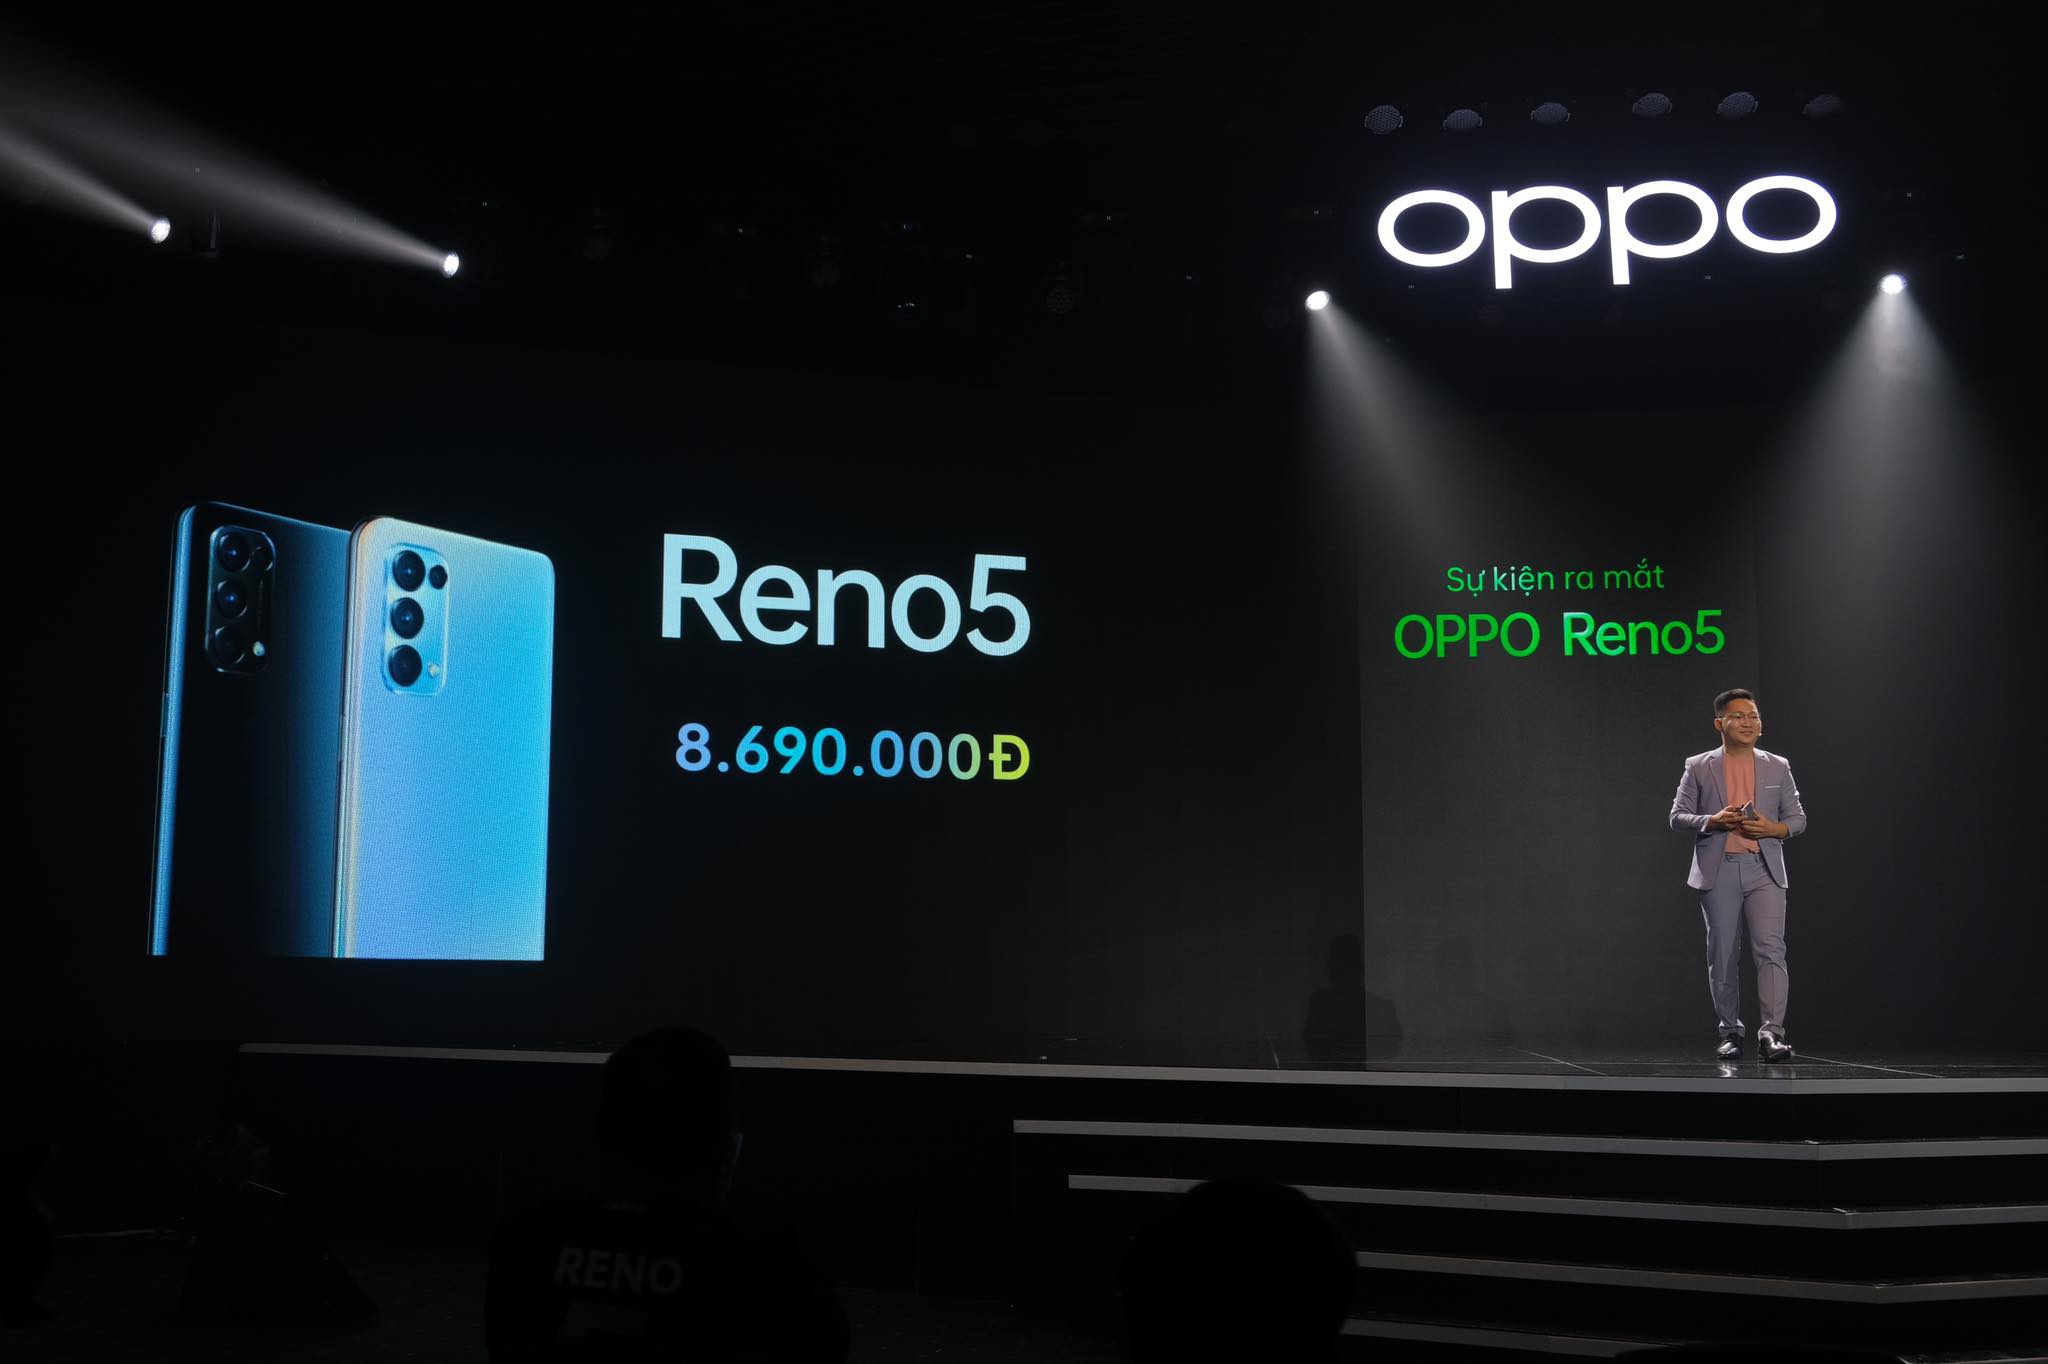 OPPO Reno5 chính thức ra mắt tại Việt Nam, giá 8,690,000 VND